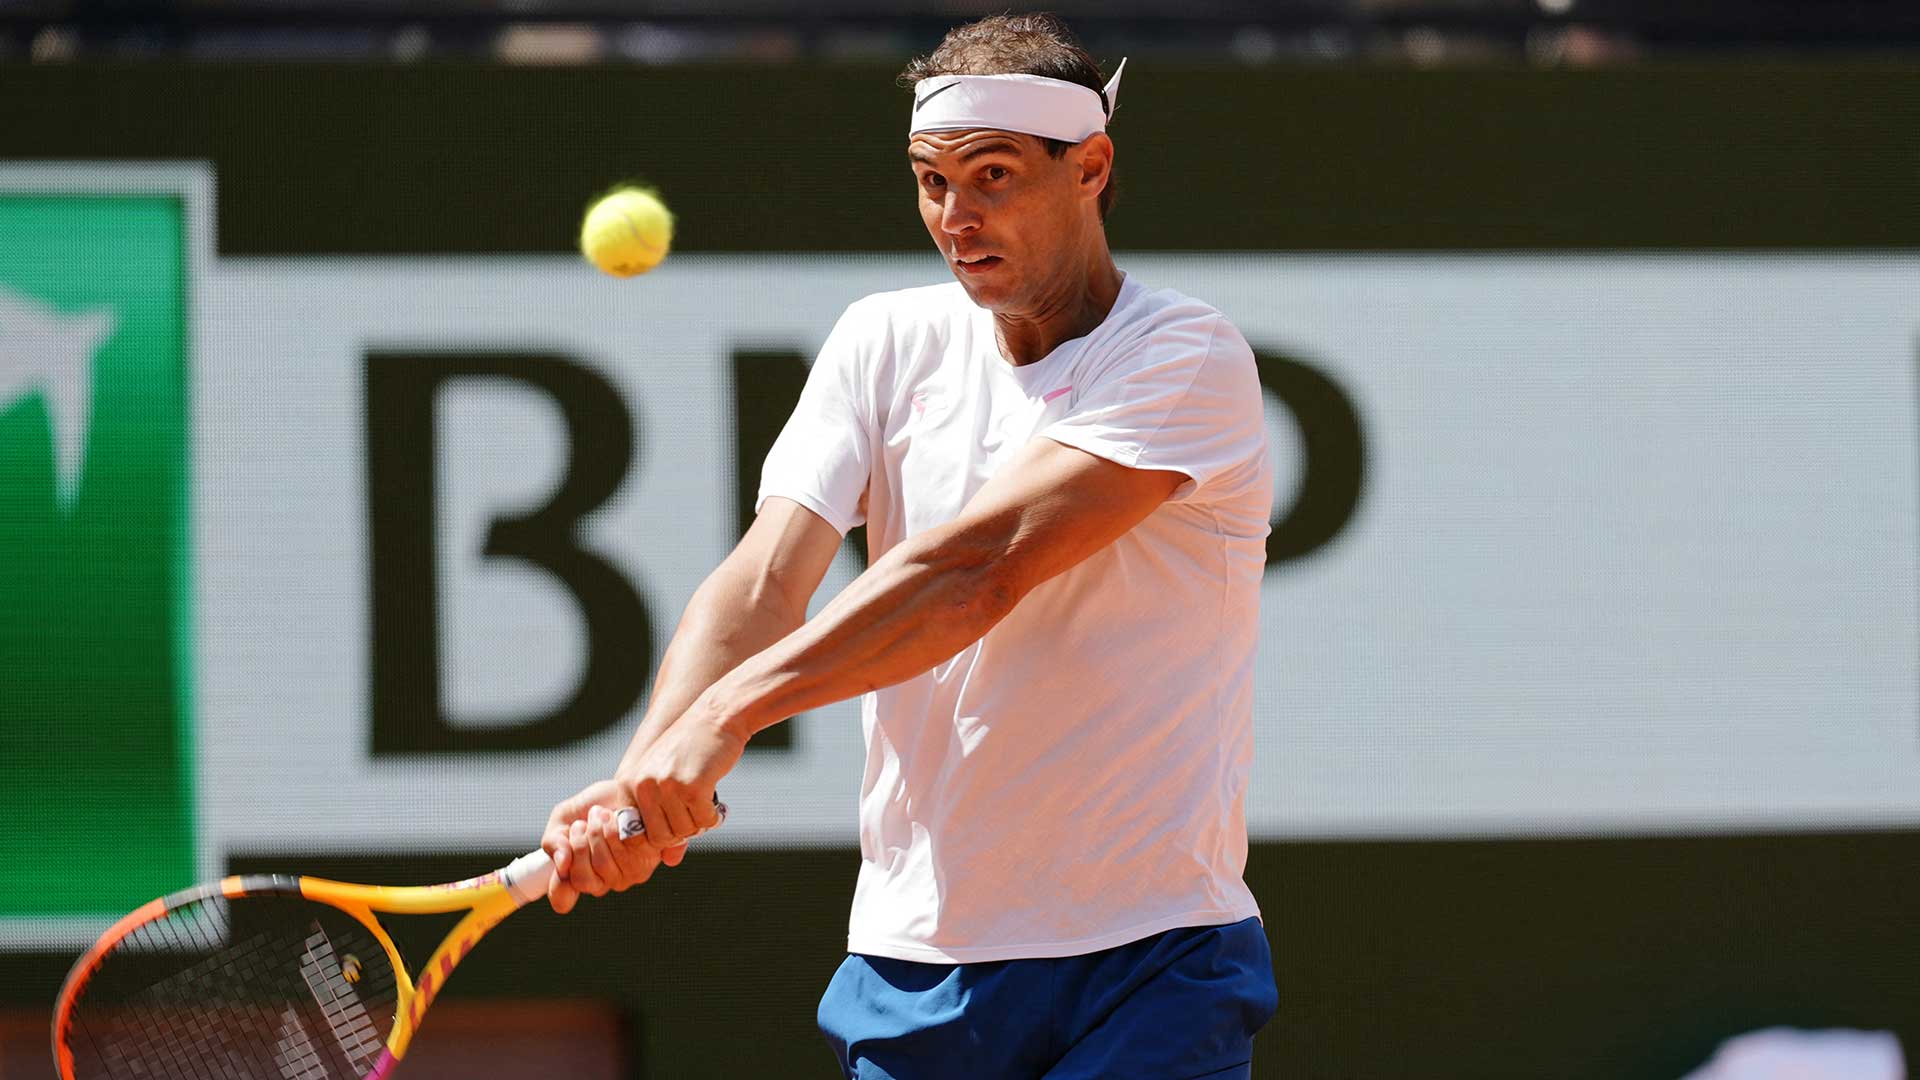 Nadal faces Zverev in popcorn first-round clash at Roland Garros